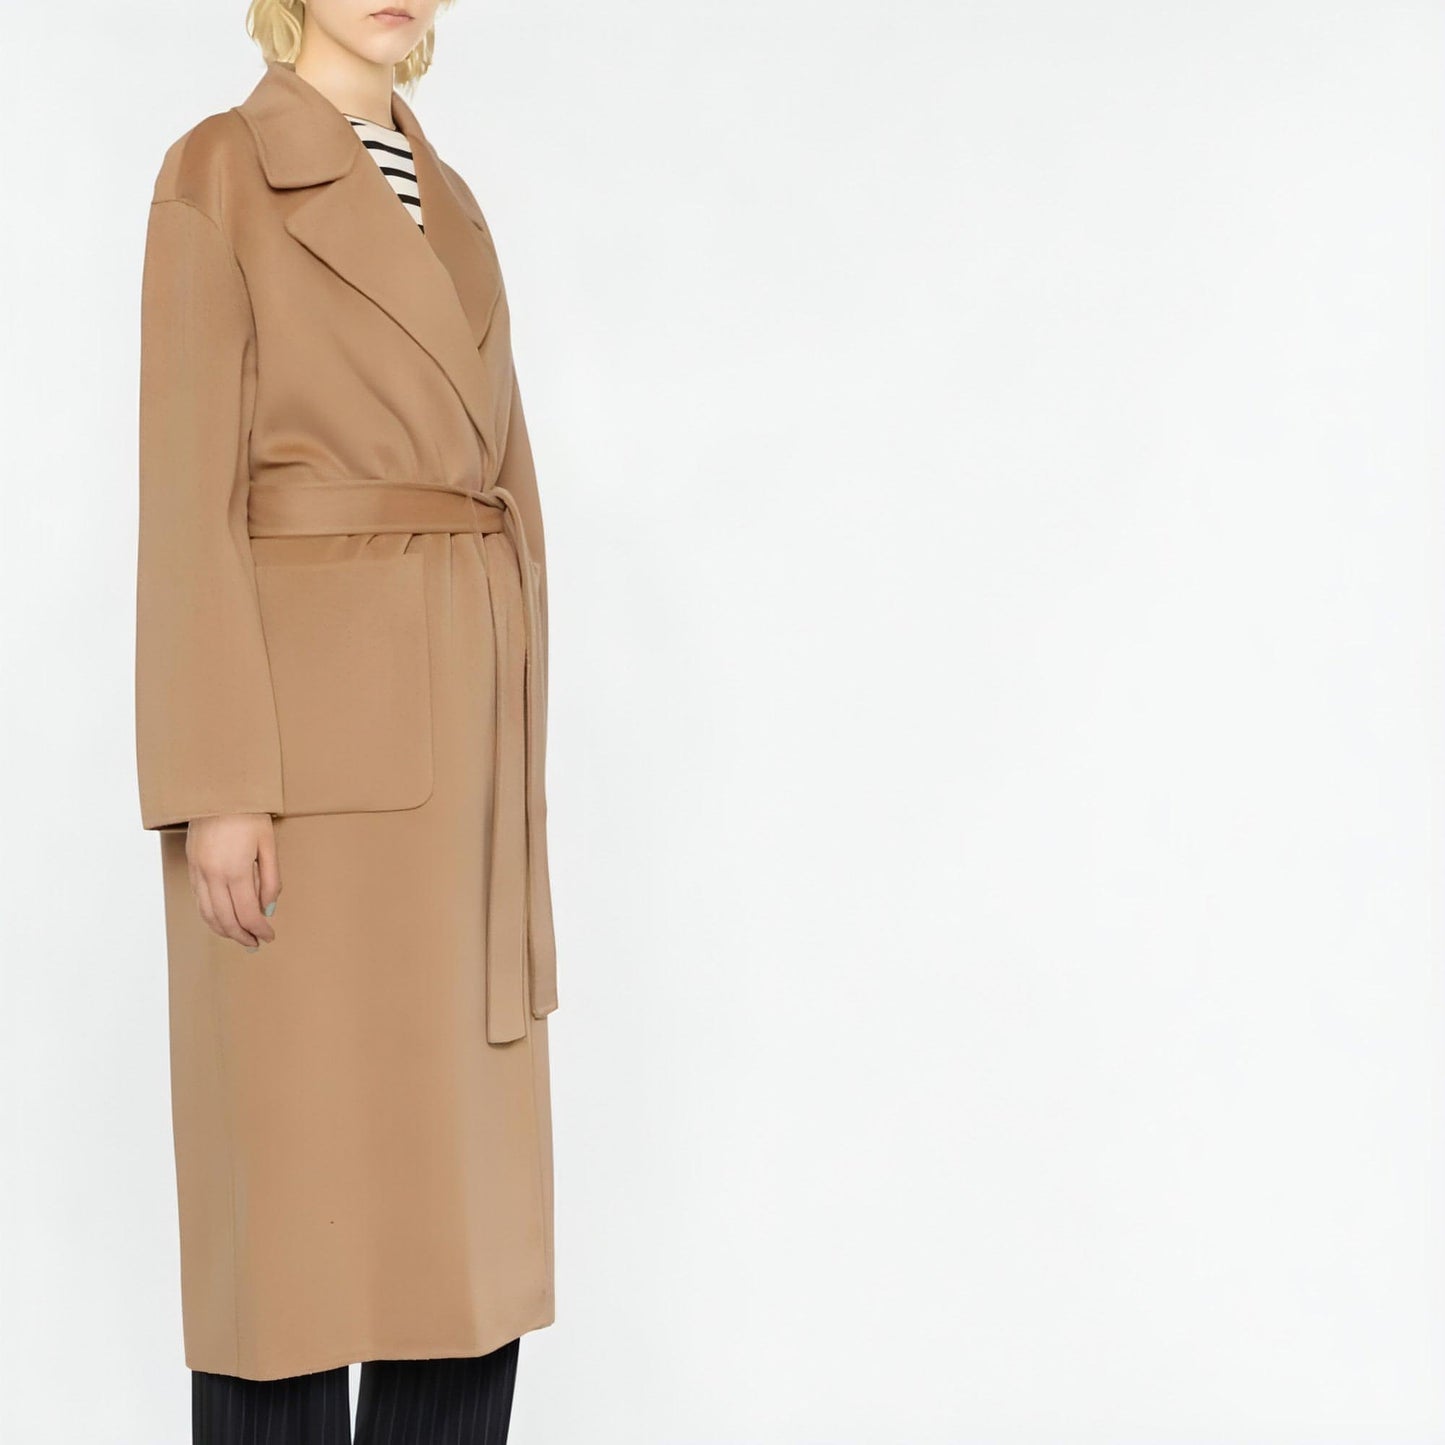 MICHAEL KORS moteriškas rudas paltas